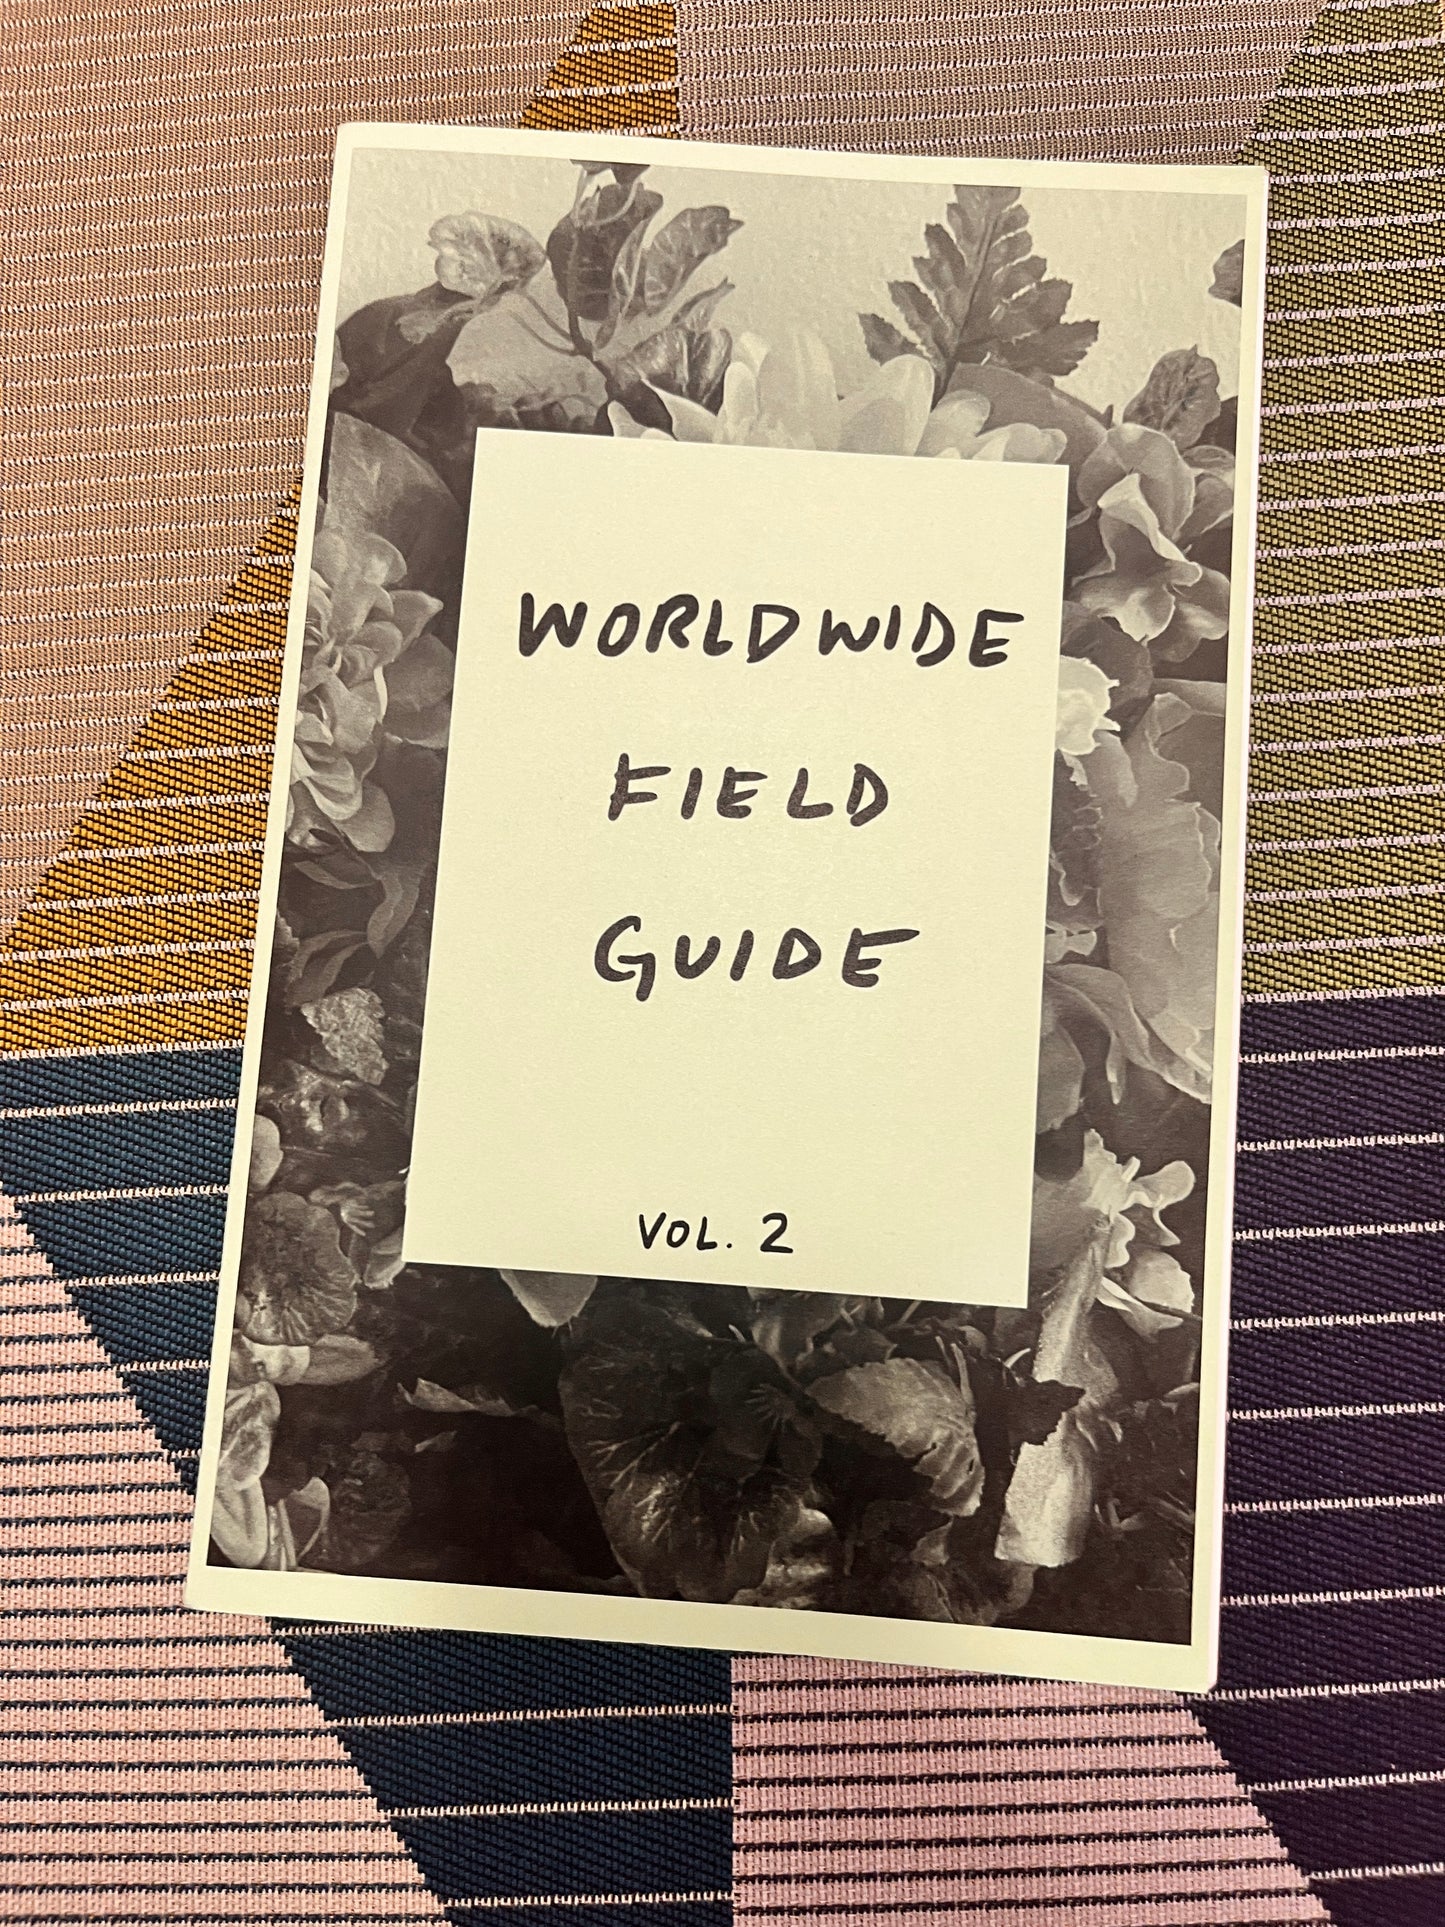 Worldwide Field Guide Vol. 2